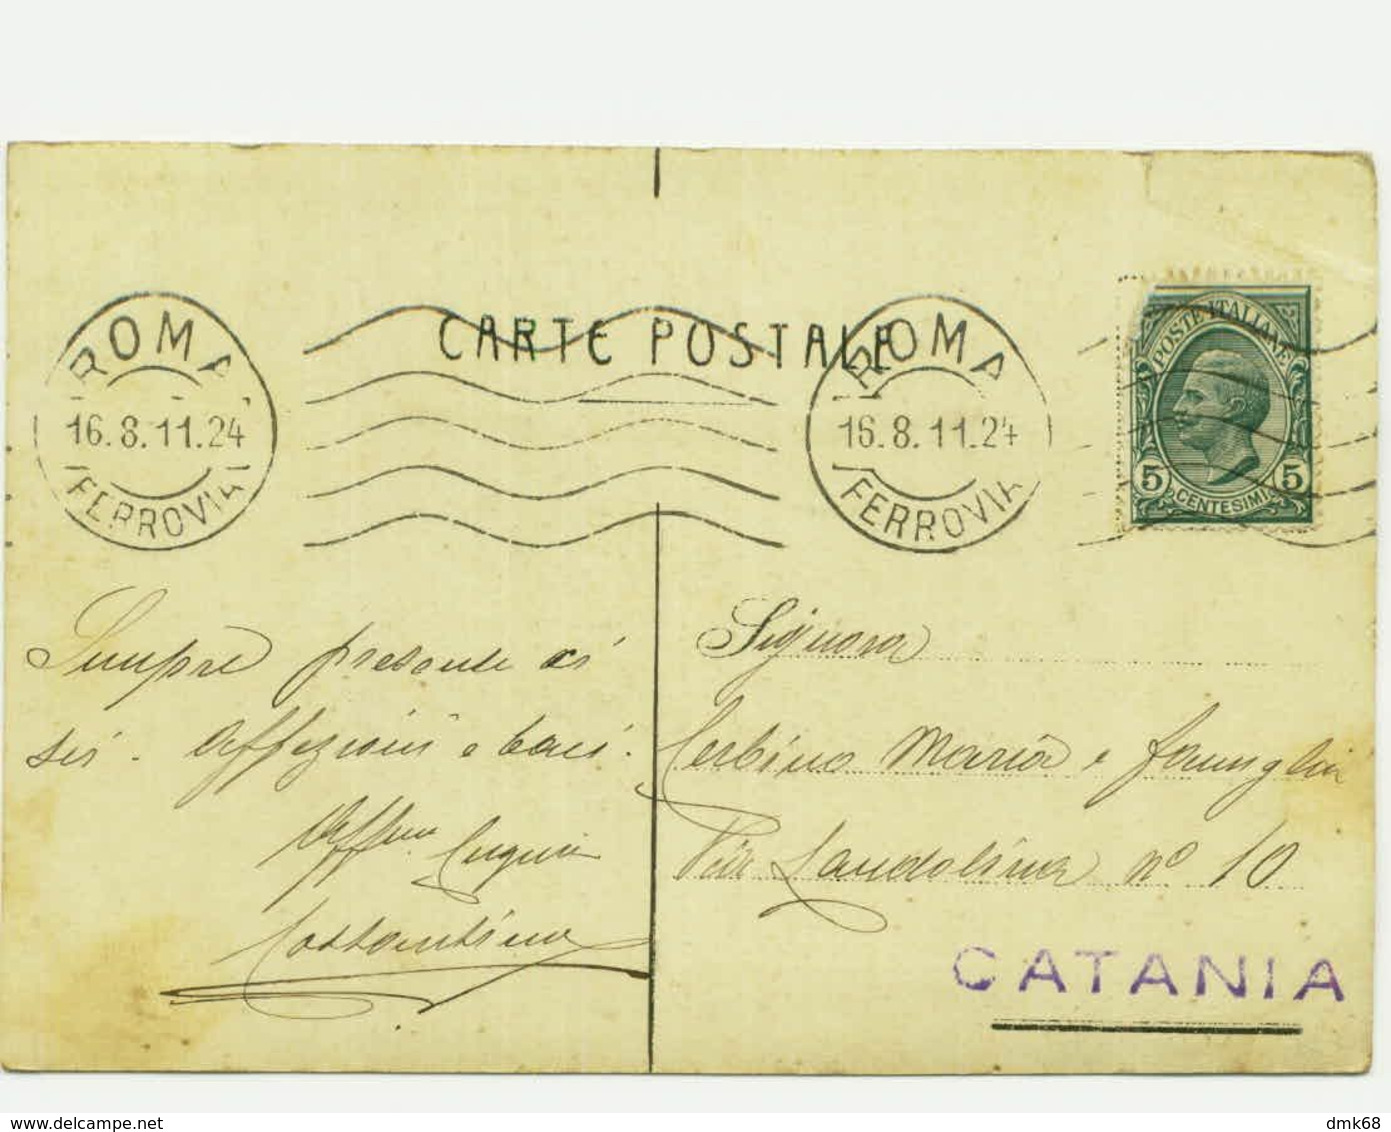 ROMA - ESPOSIZIONE 1911 - PADIGLIONE DELLA TOSCANA  - EDIZ. CROMO LIT. R. BULLA - SPEDITA 1911 (5681) - Ausstellungen